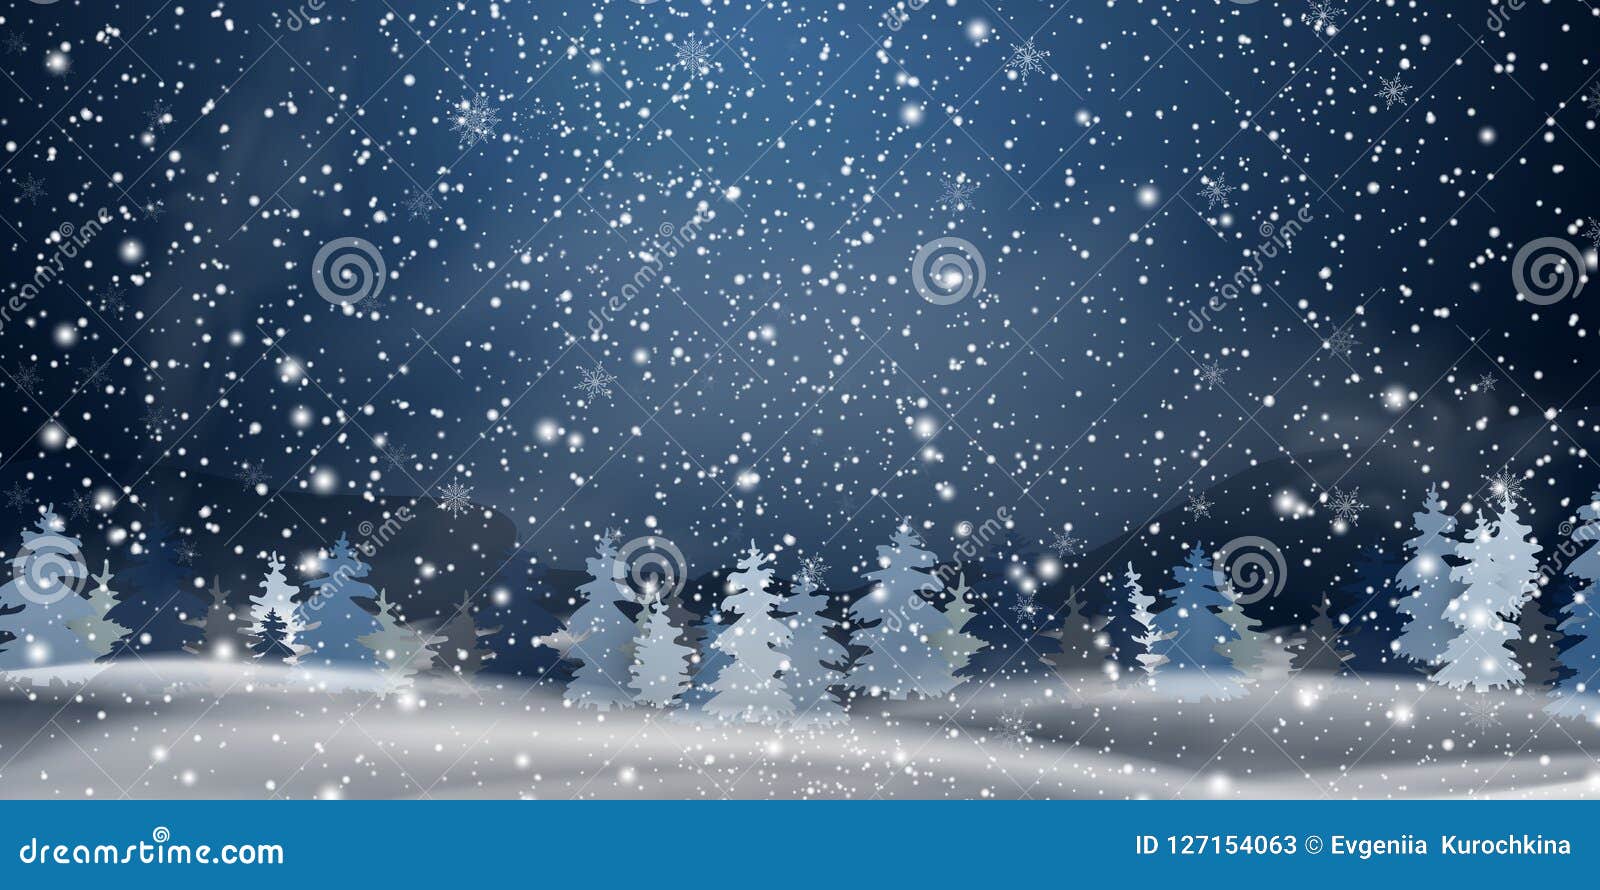 Weihnachten Nacht Snowy Waldlandschaft Weisse Schneeflocken Auf Einem Blauen Hintergrund Feiertagswinterlandschaft Fur Frohe Weih Vektor Abbildung Illustration Von Weisse Schneeflocken